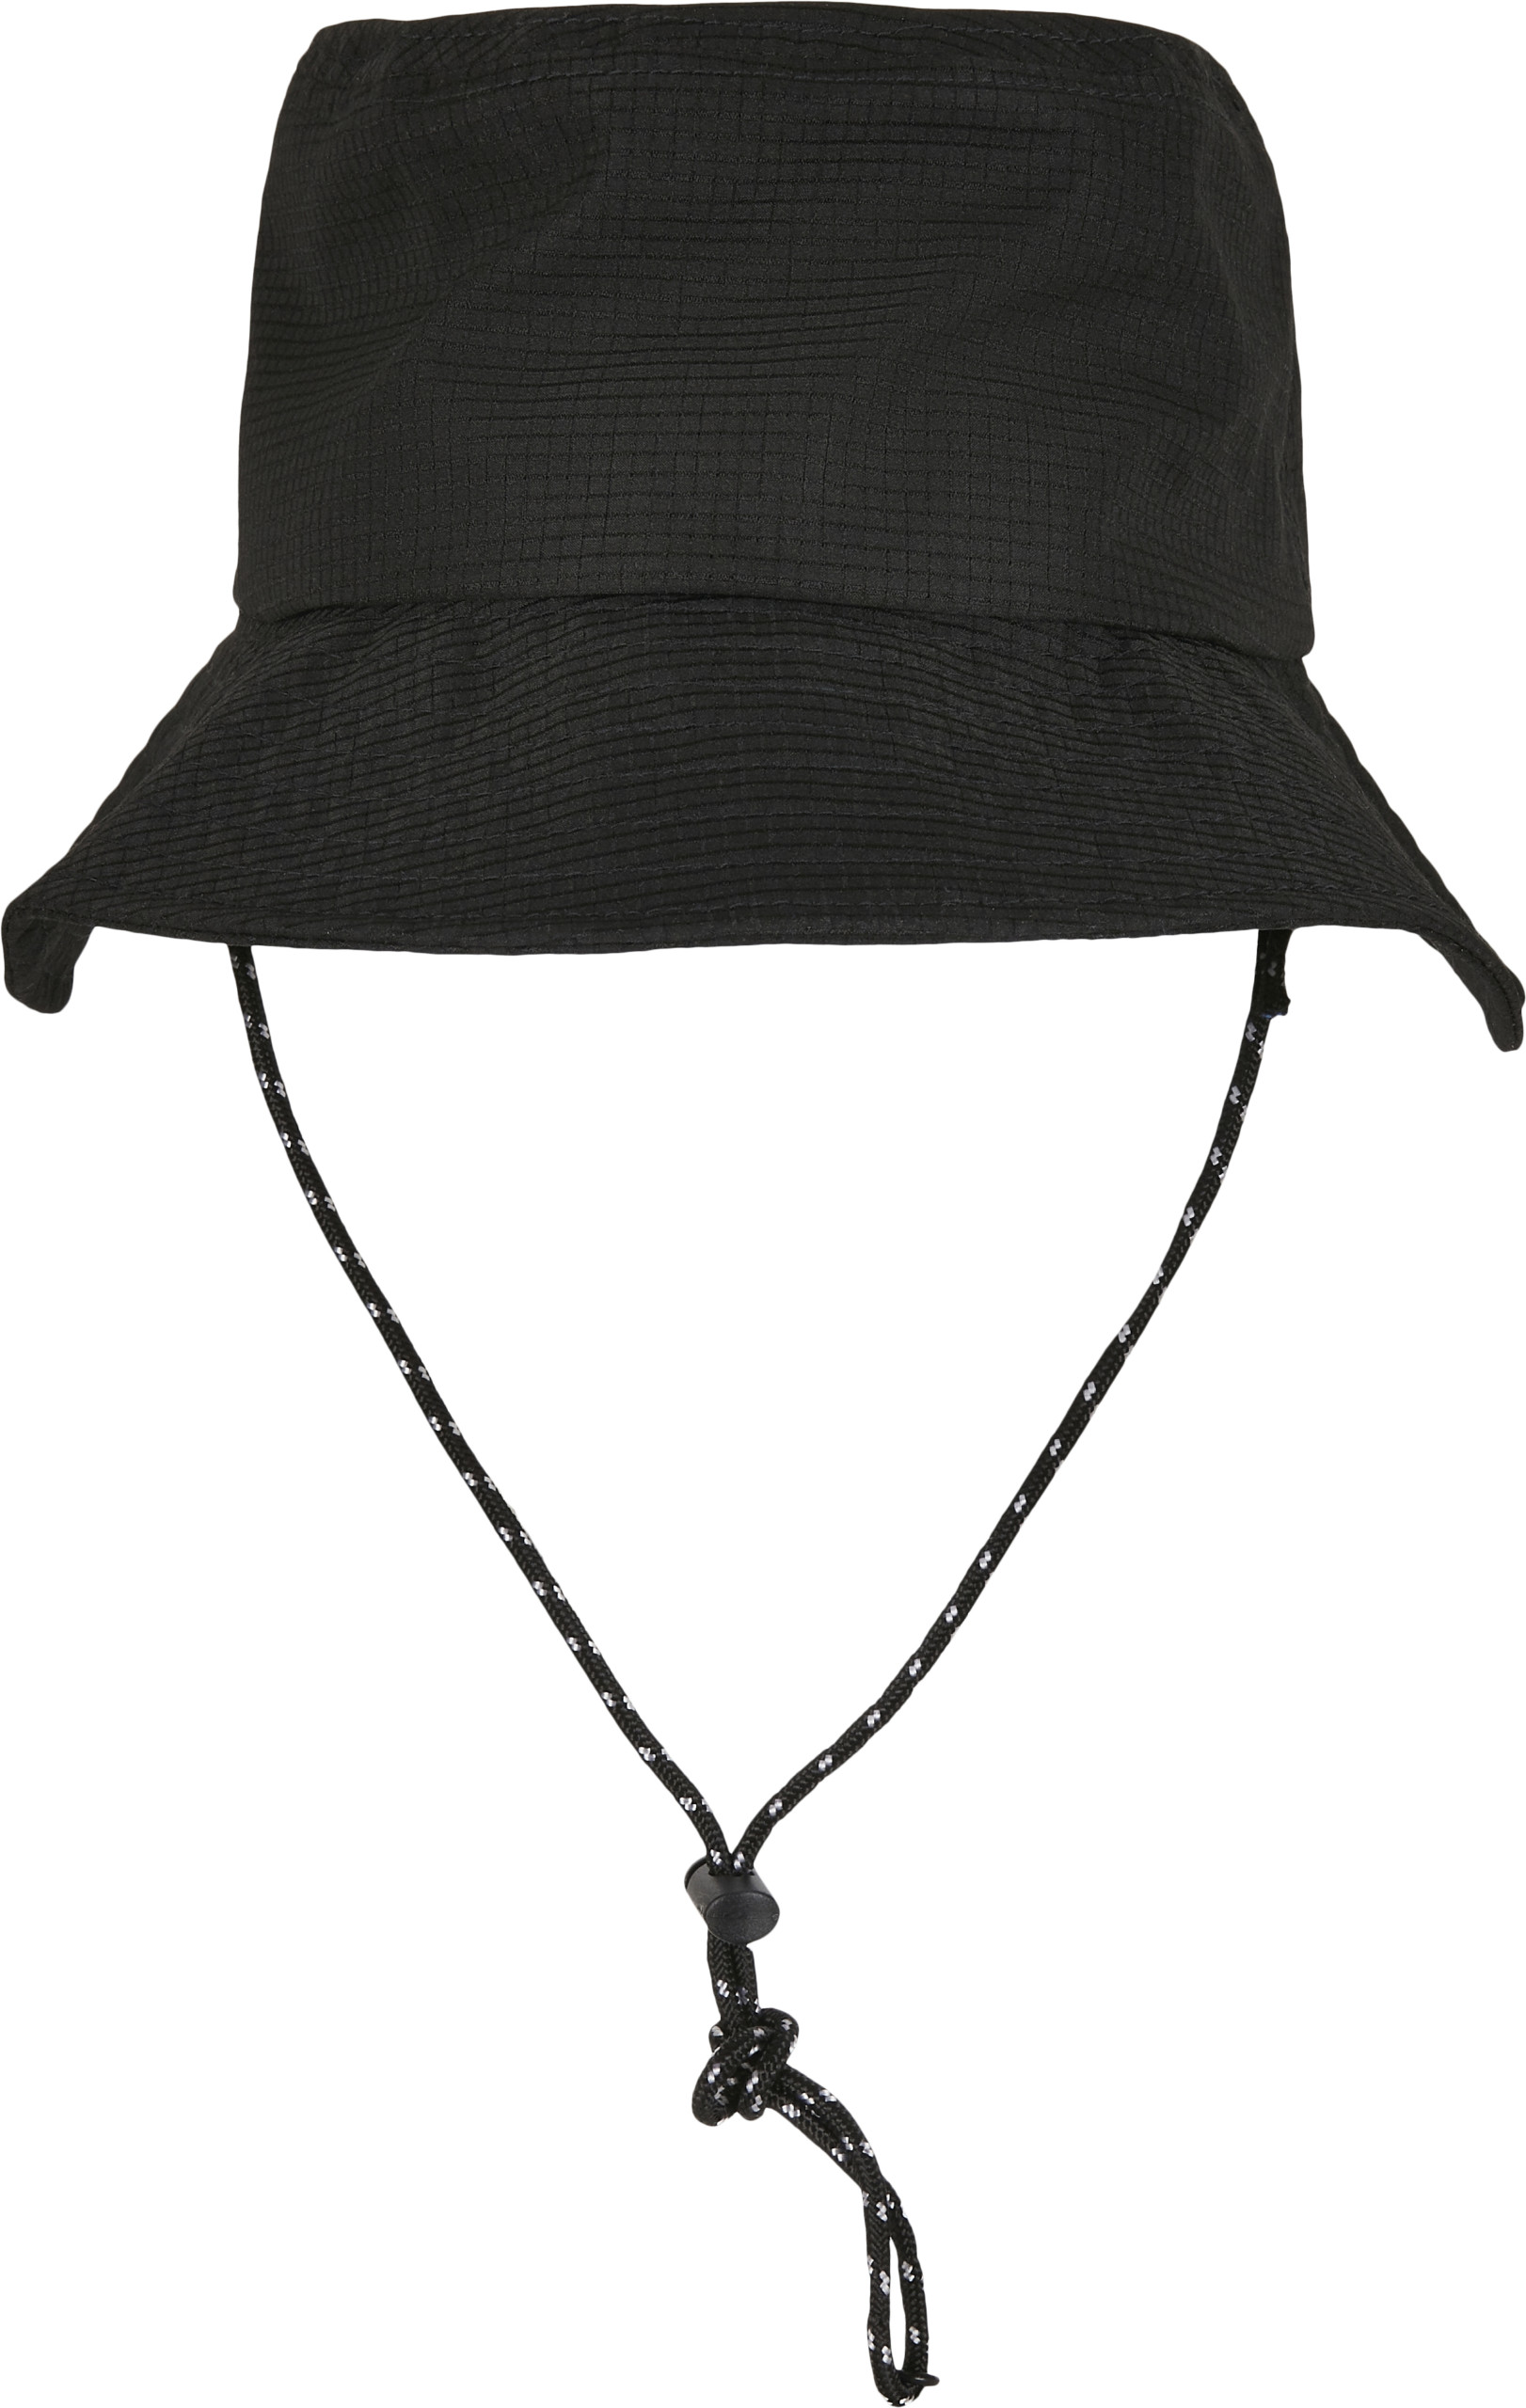 Caps & Mützen - FLEXFIT - Adjustable Flexfit Bucket Hat - FX5003AB